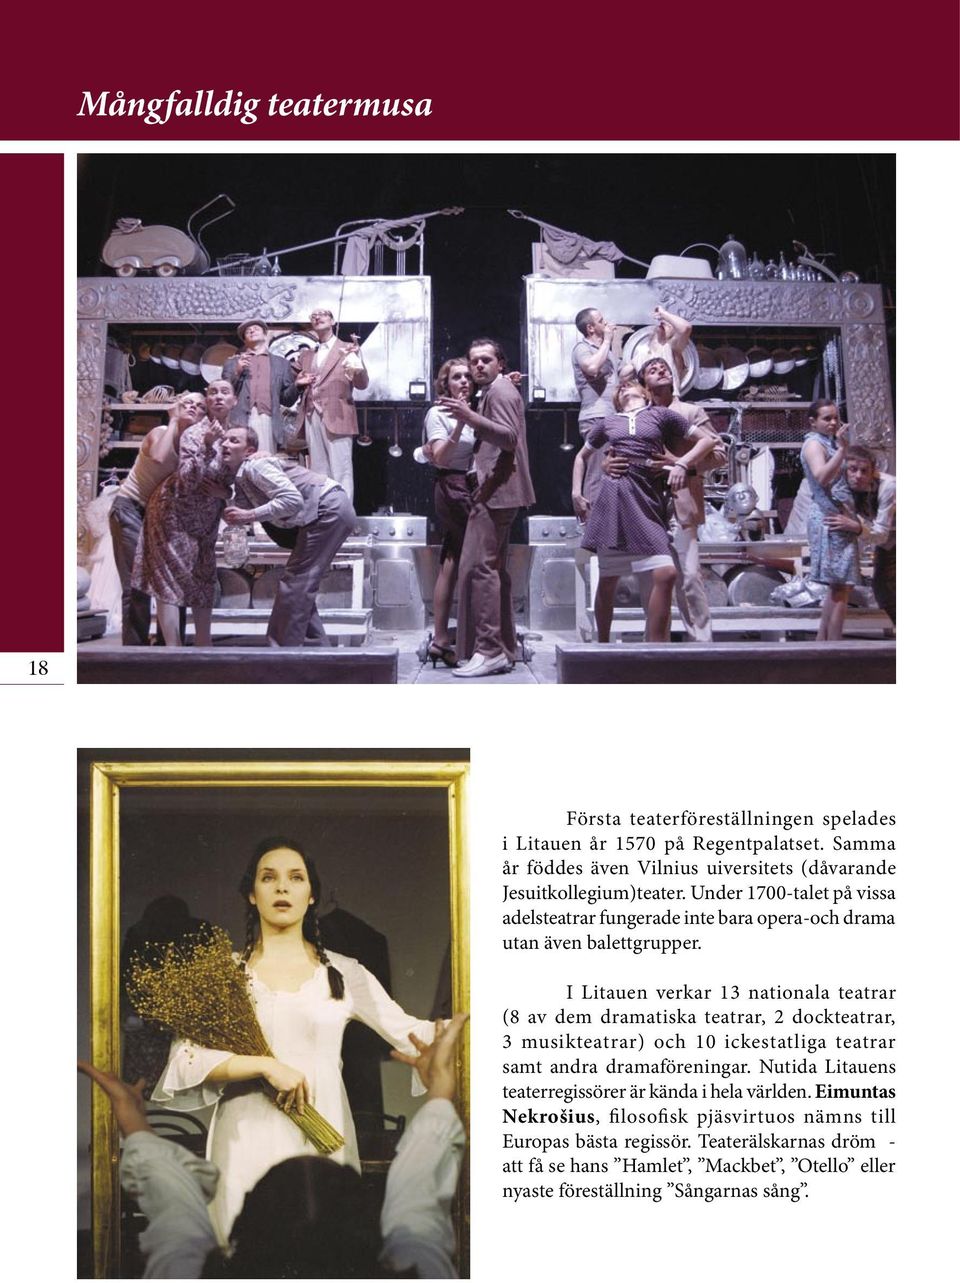 Under 1700-talet på vissa adelsteatrar fungerade inte bara opera-och drama utan även balettgrupper.